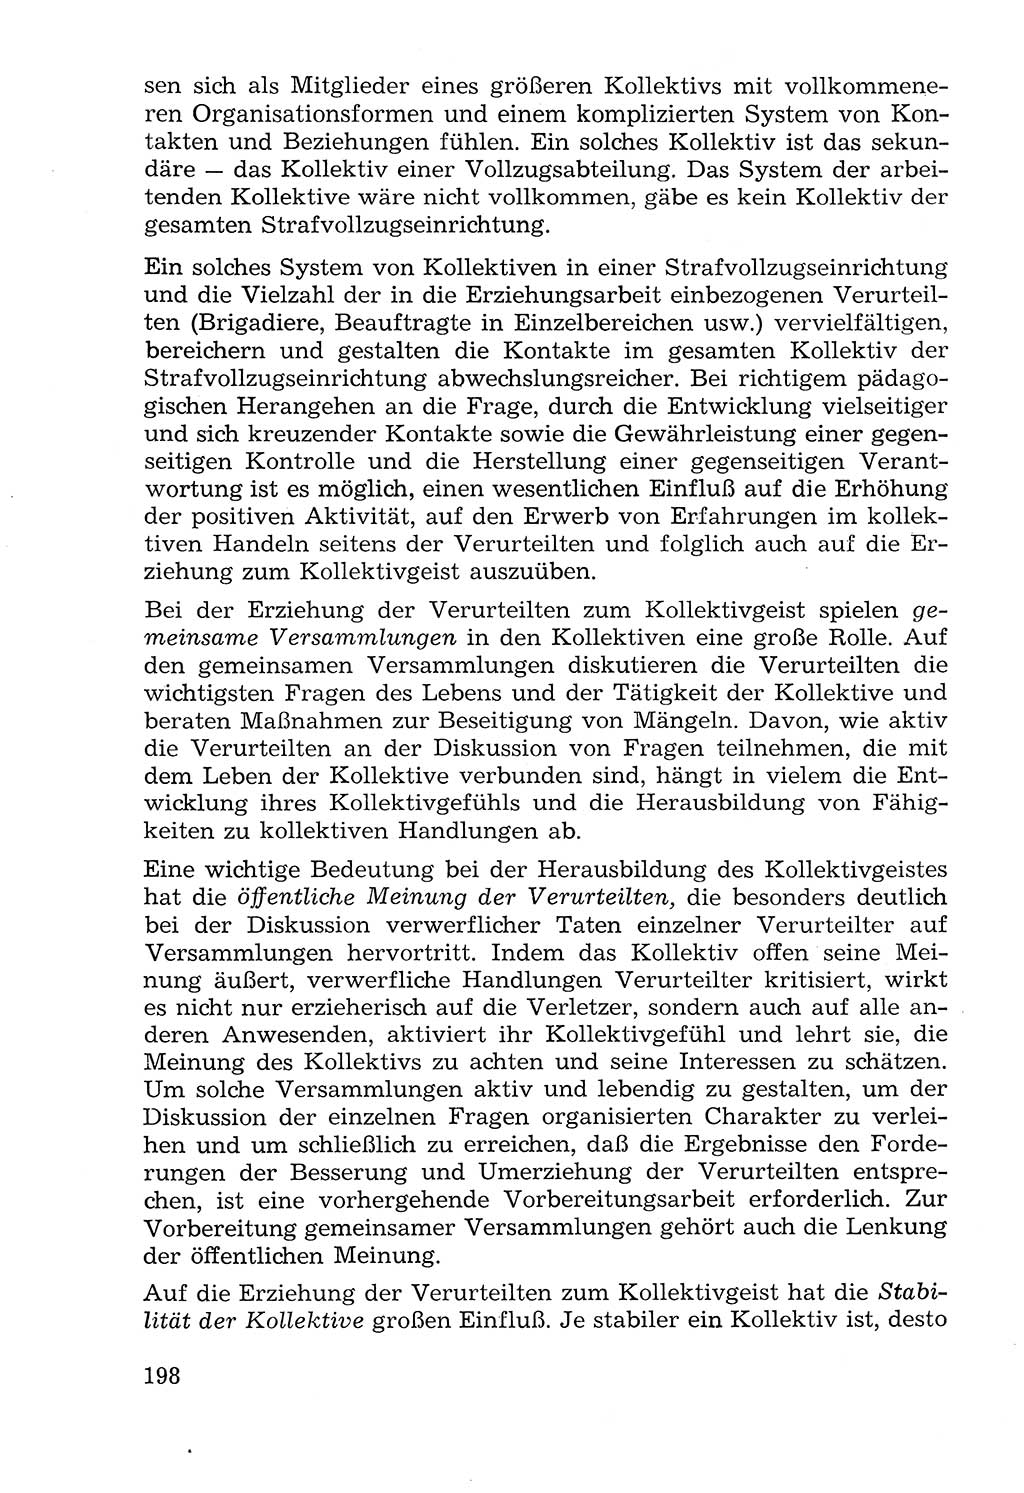 Lehrbuch der Strafvollzugspädagogik [Deutsche Demokratische Republik (DDR)] 1969, Seite 198 (Lb. SV-Pd. DDR 1969, S. 198)